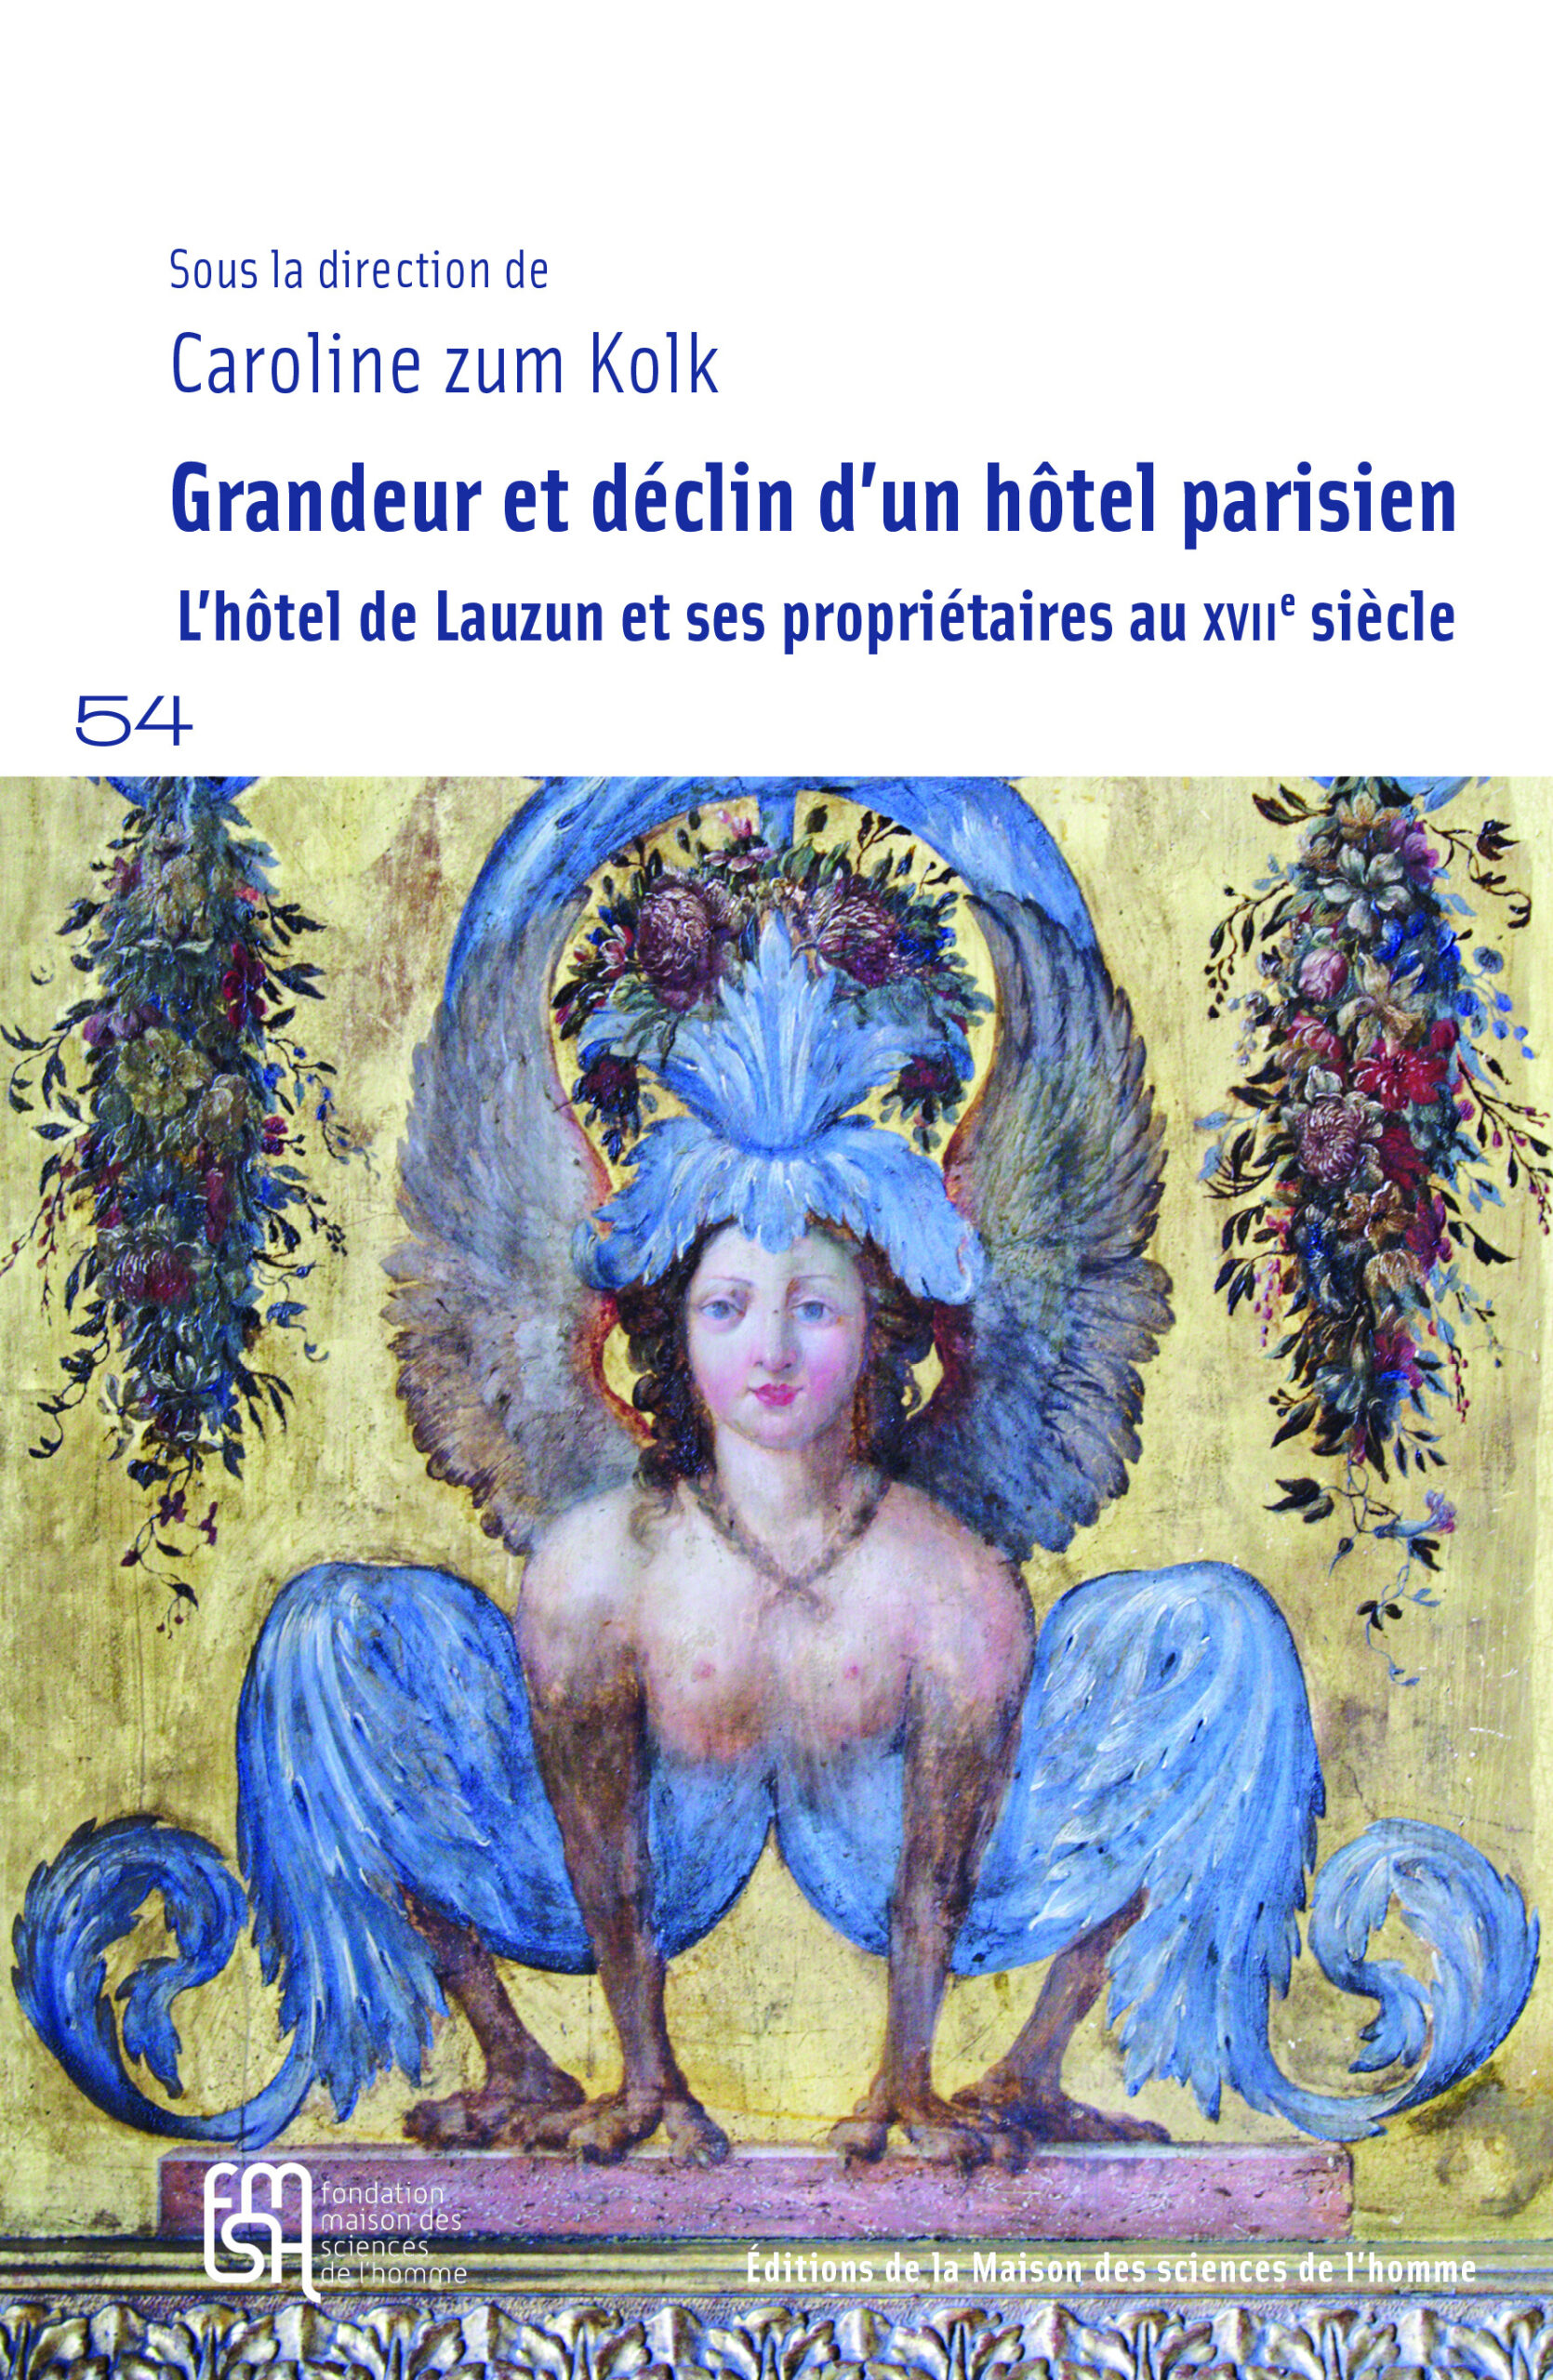 Grandeur et déclin d'un hôtel parisien